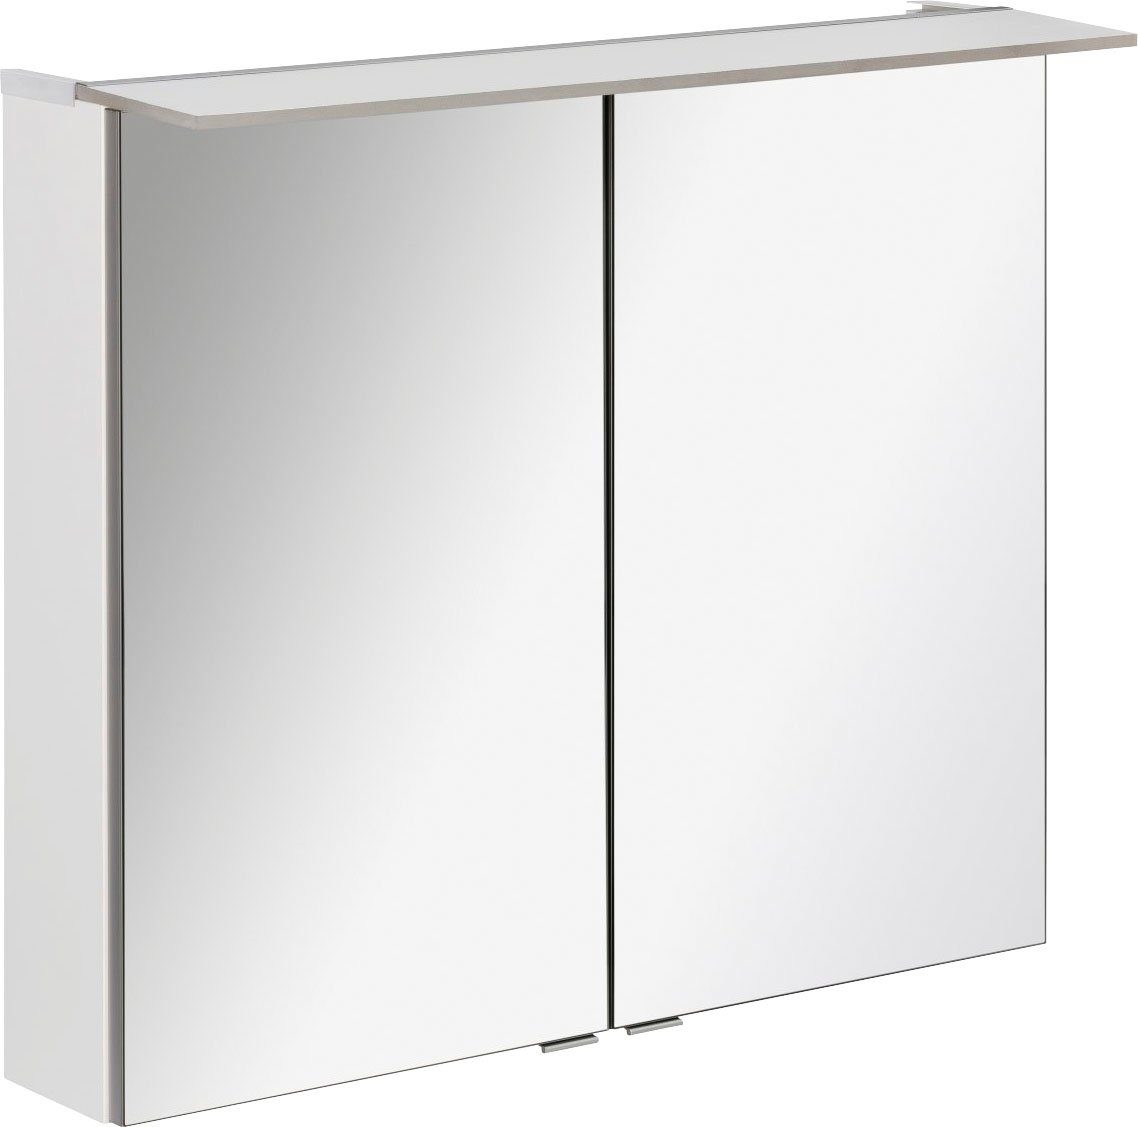 FACKELMANN Spiegelschrank PE 80 - weiß Badmöbel Breite 80 cm, mit 2 Türen doppelseitig verspiegelt